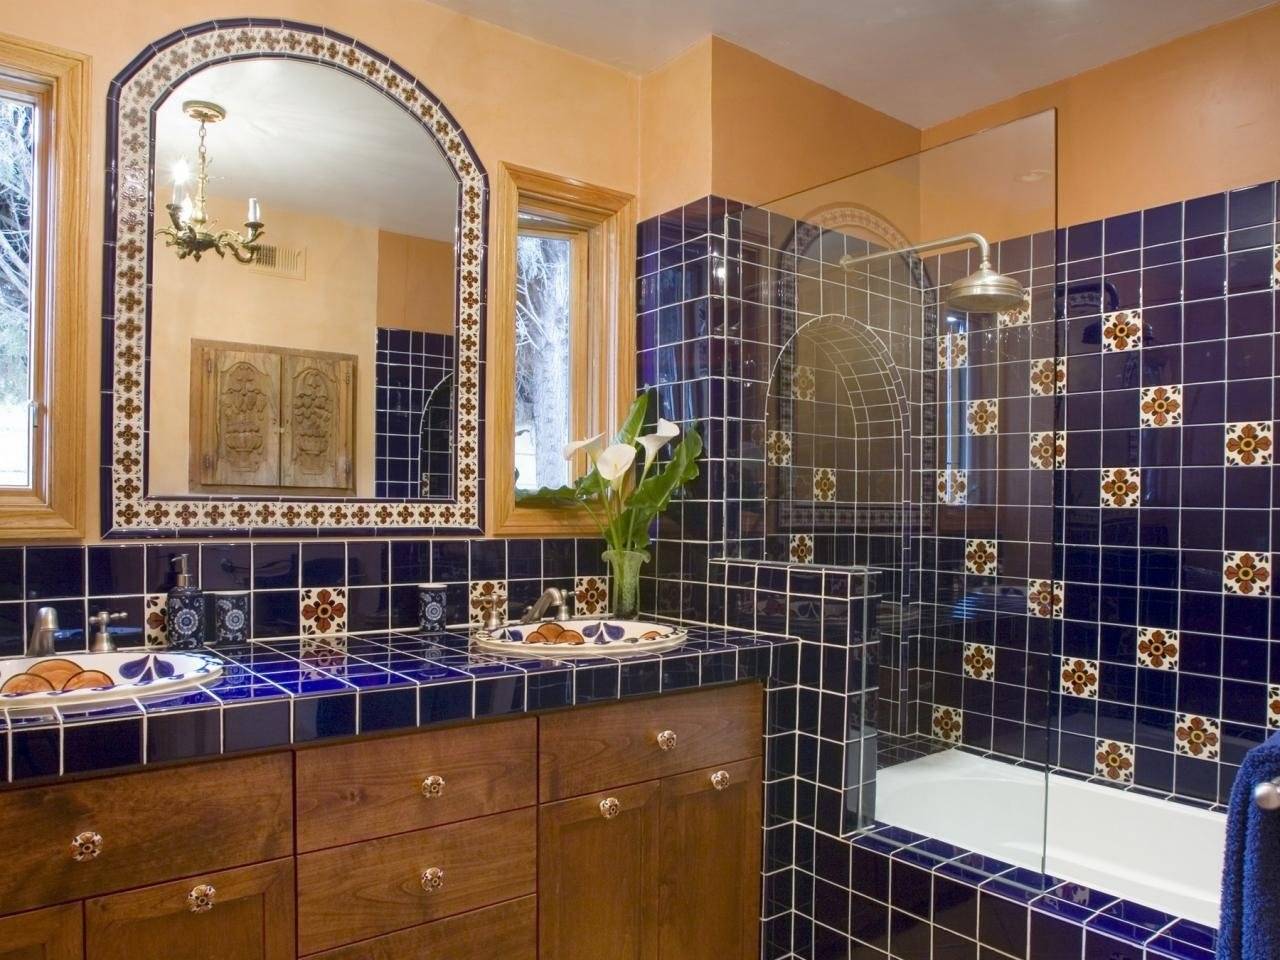 Ванная комната в восточном стиле (фото) – идеи интерьера и дизайна ванной